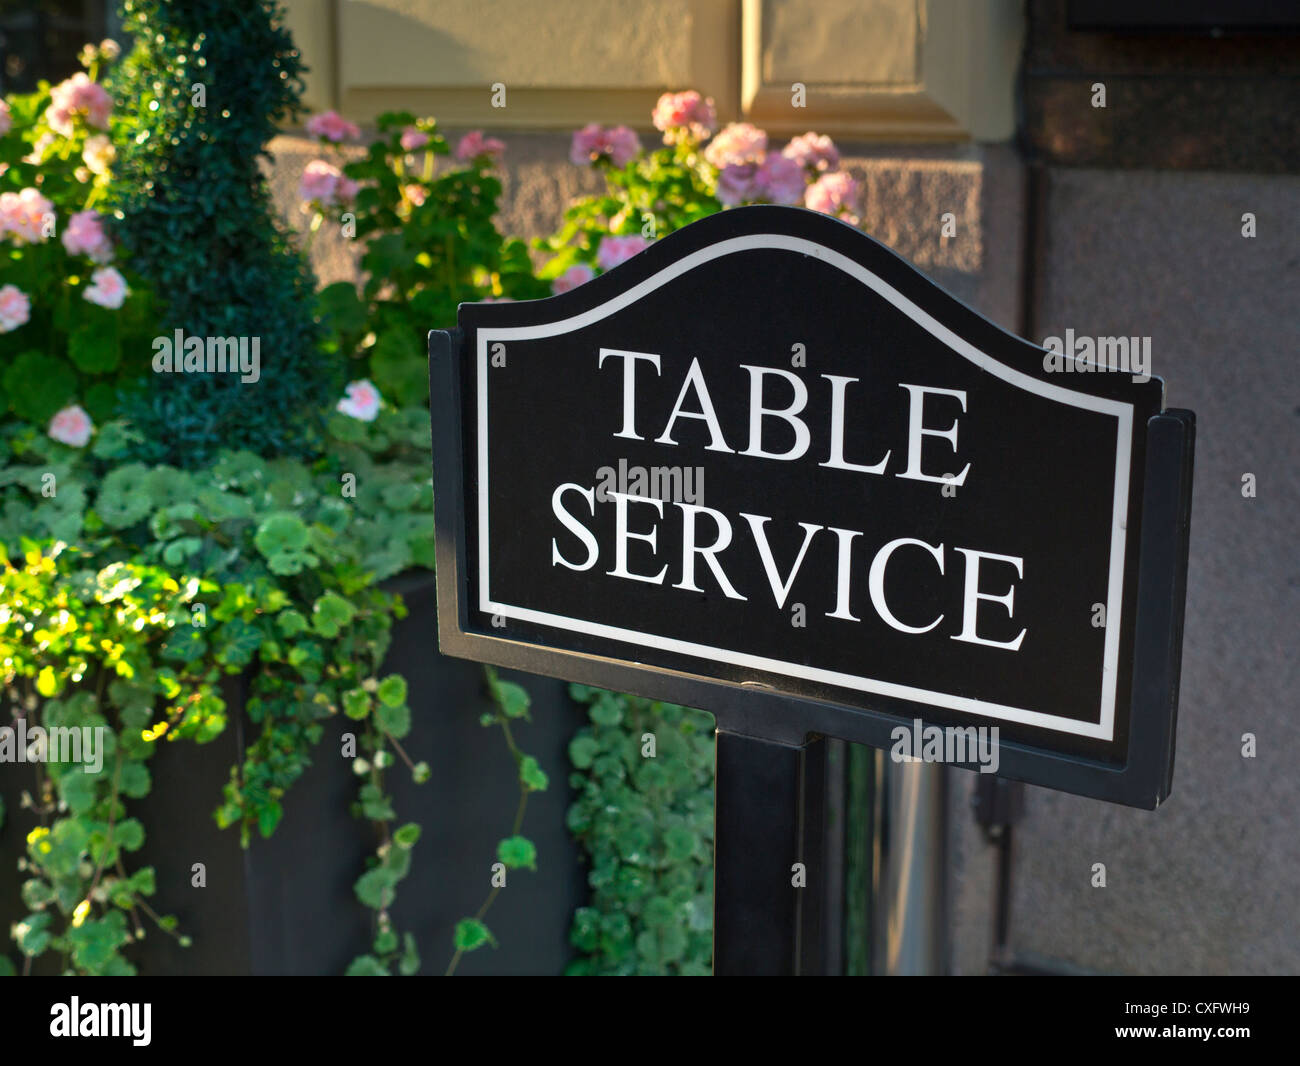 Service de table hôtellerie signe terrasse alfresco fleurs service de table affiche à l'extérieur de l'hôtel de luxe 5 étoiles cafe brasserie Banque D'Images